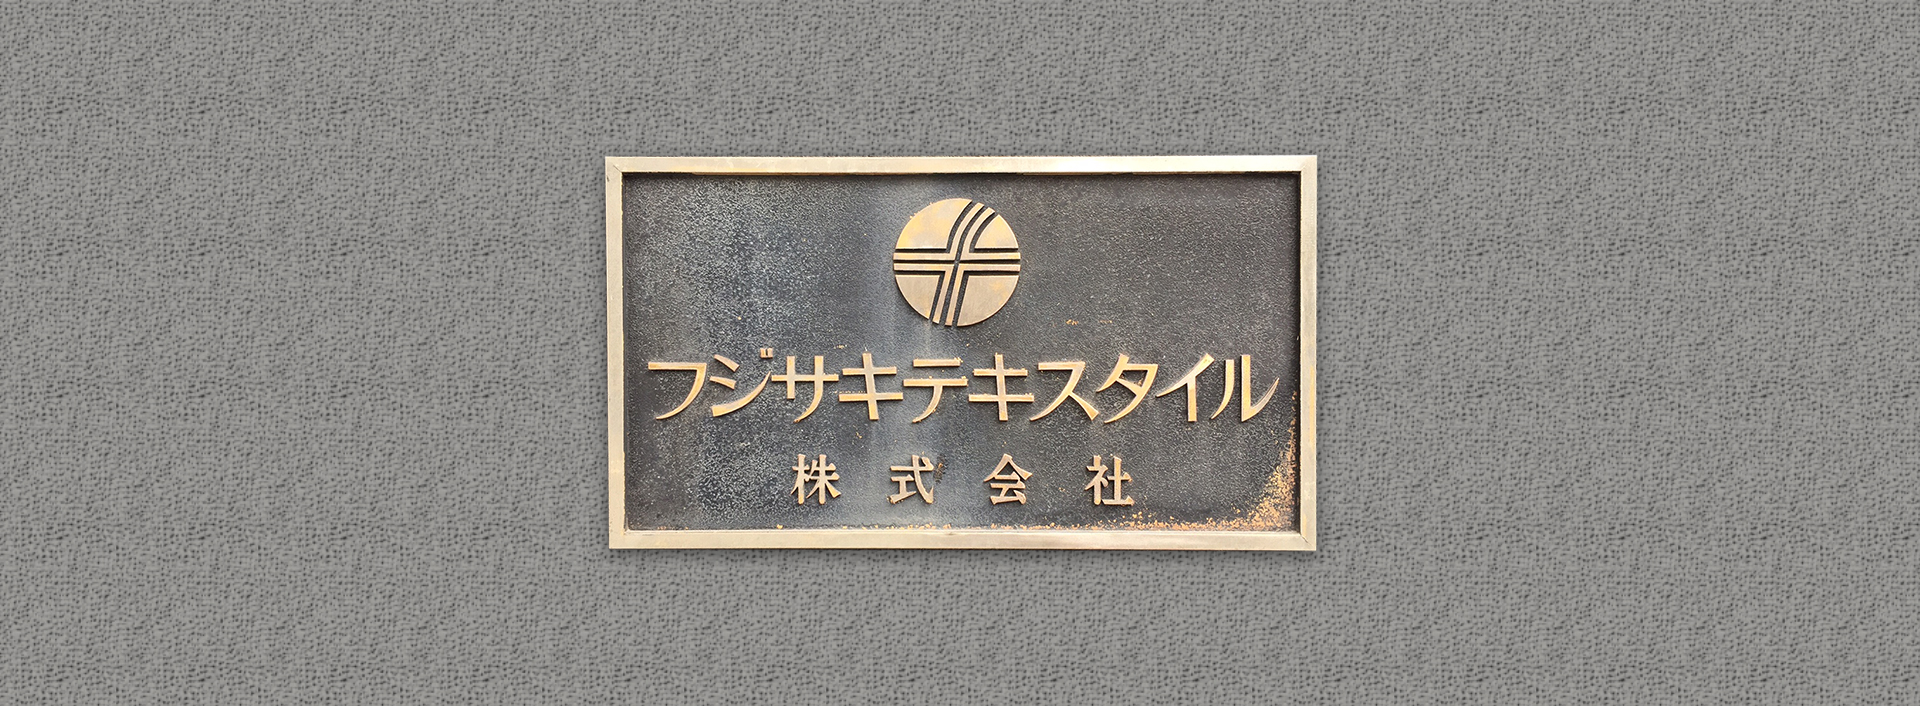 FUJISAKI TEXTILE Co., Ltd.